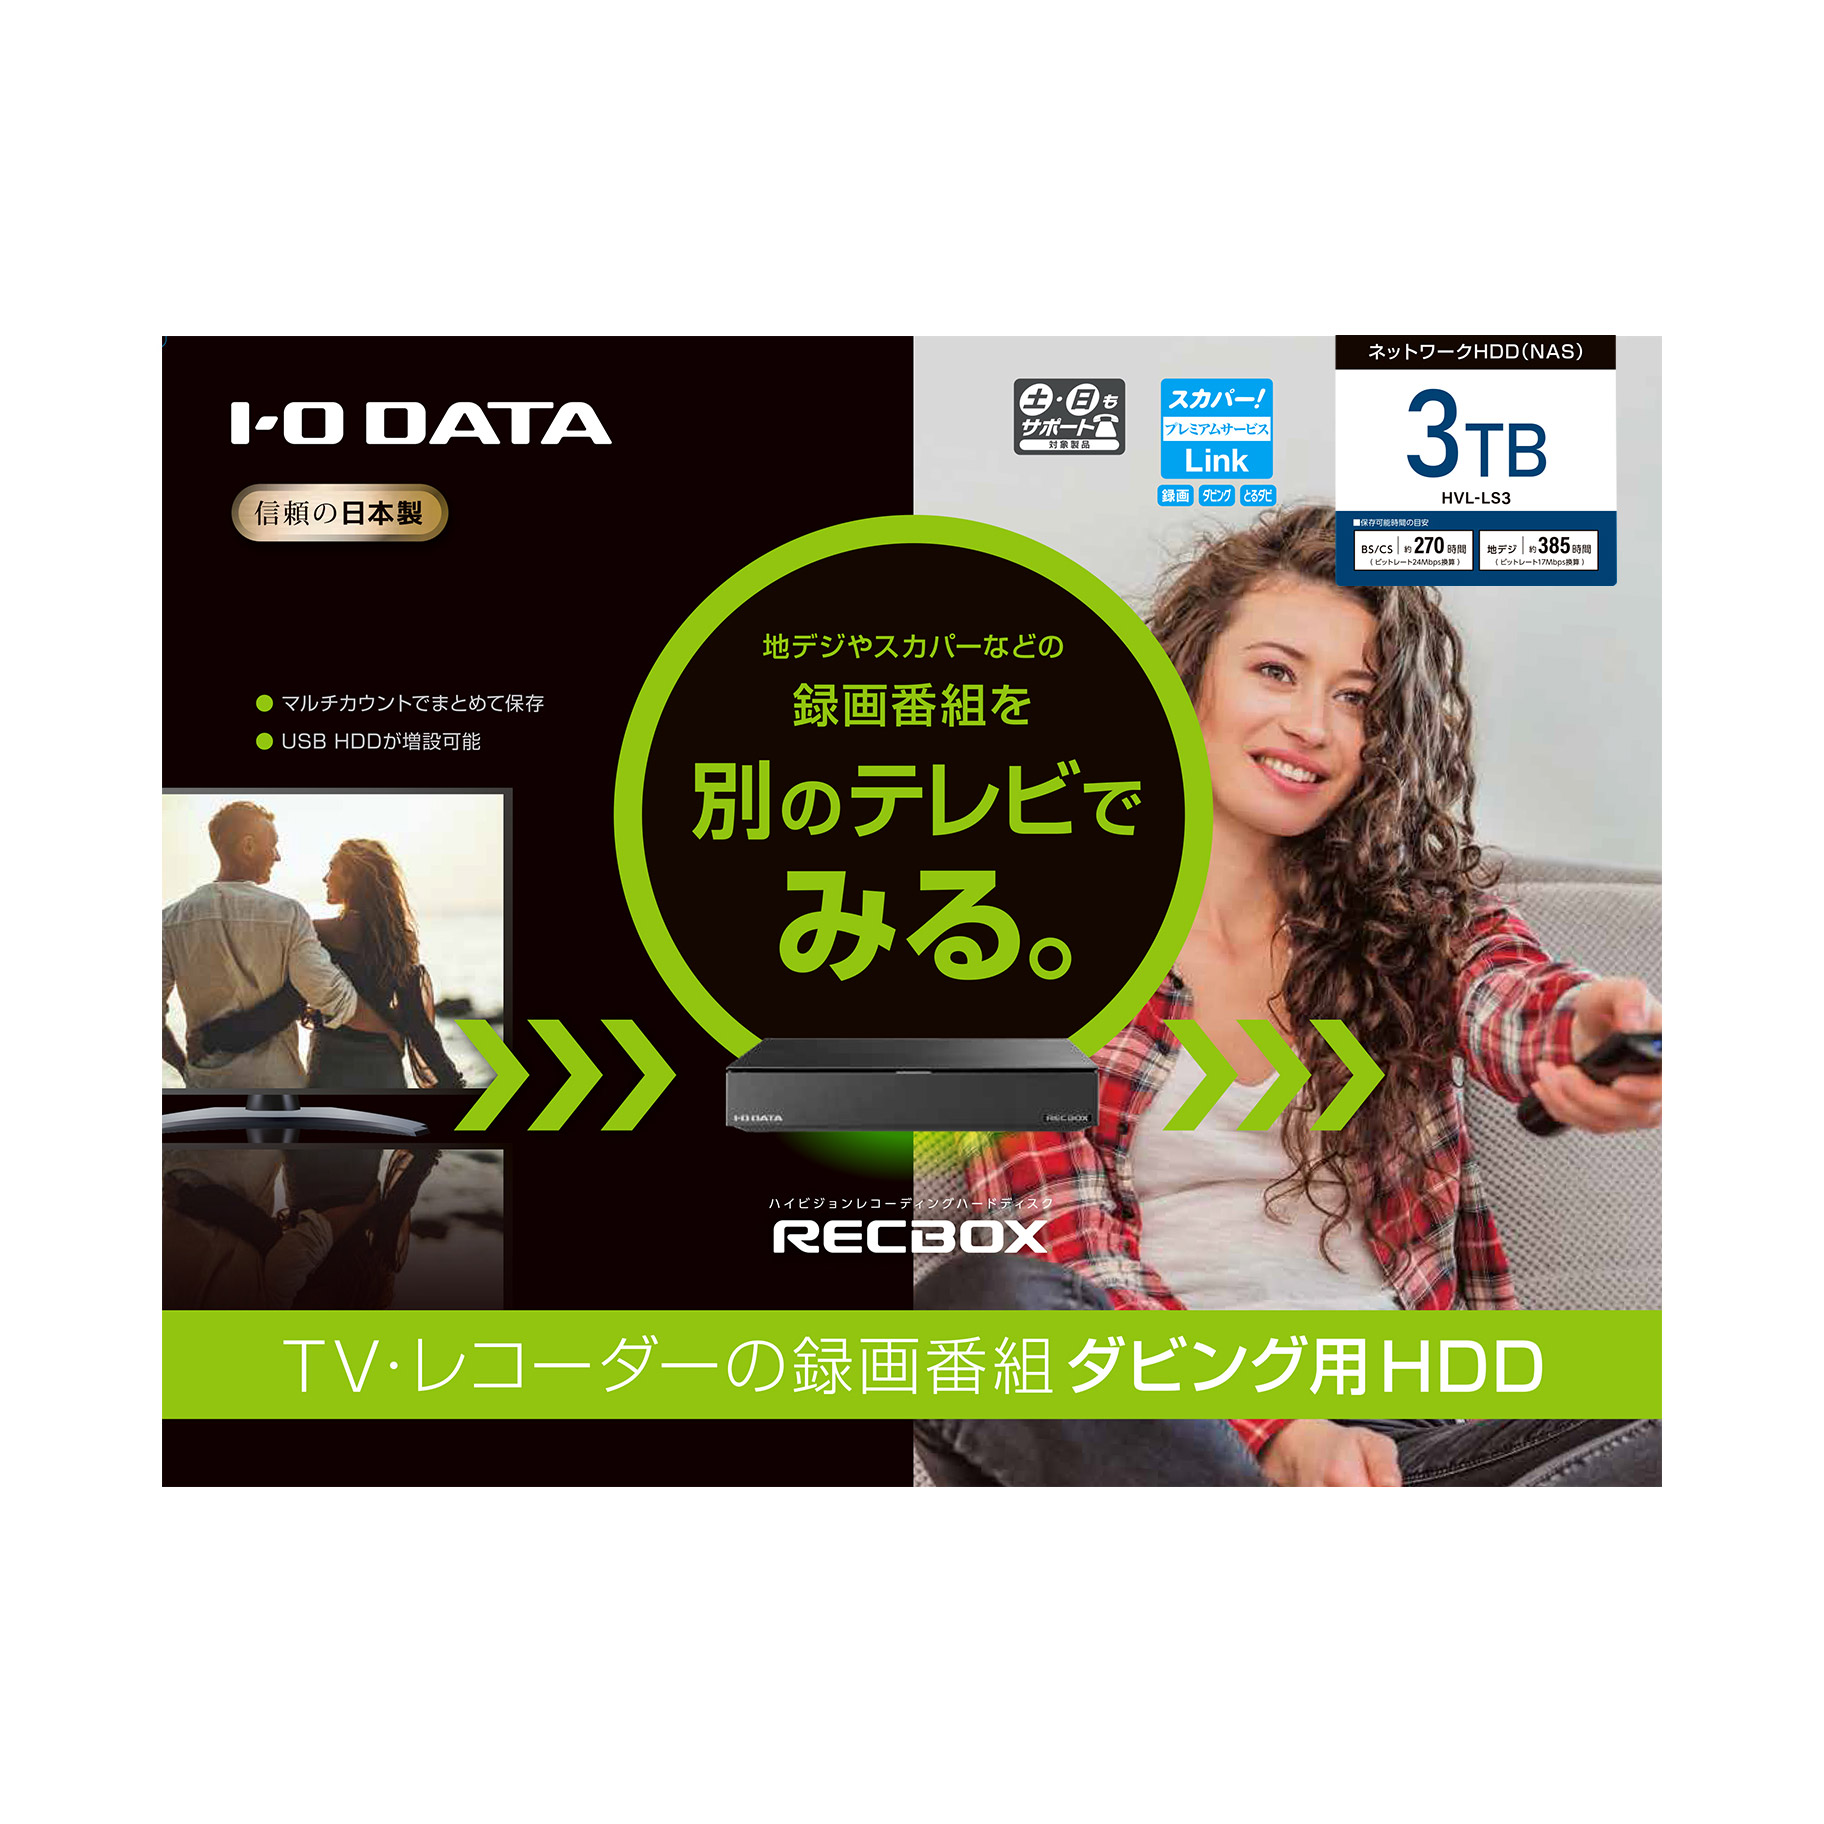 I-O DATA「RECBOX(レックボックス)」 HVL-RS4